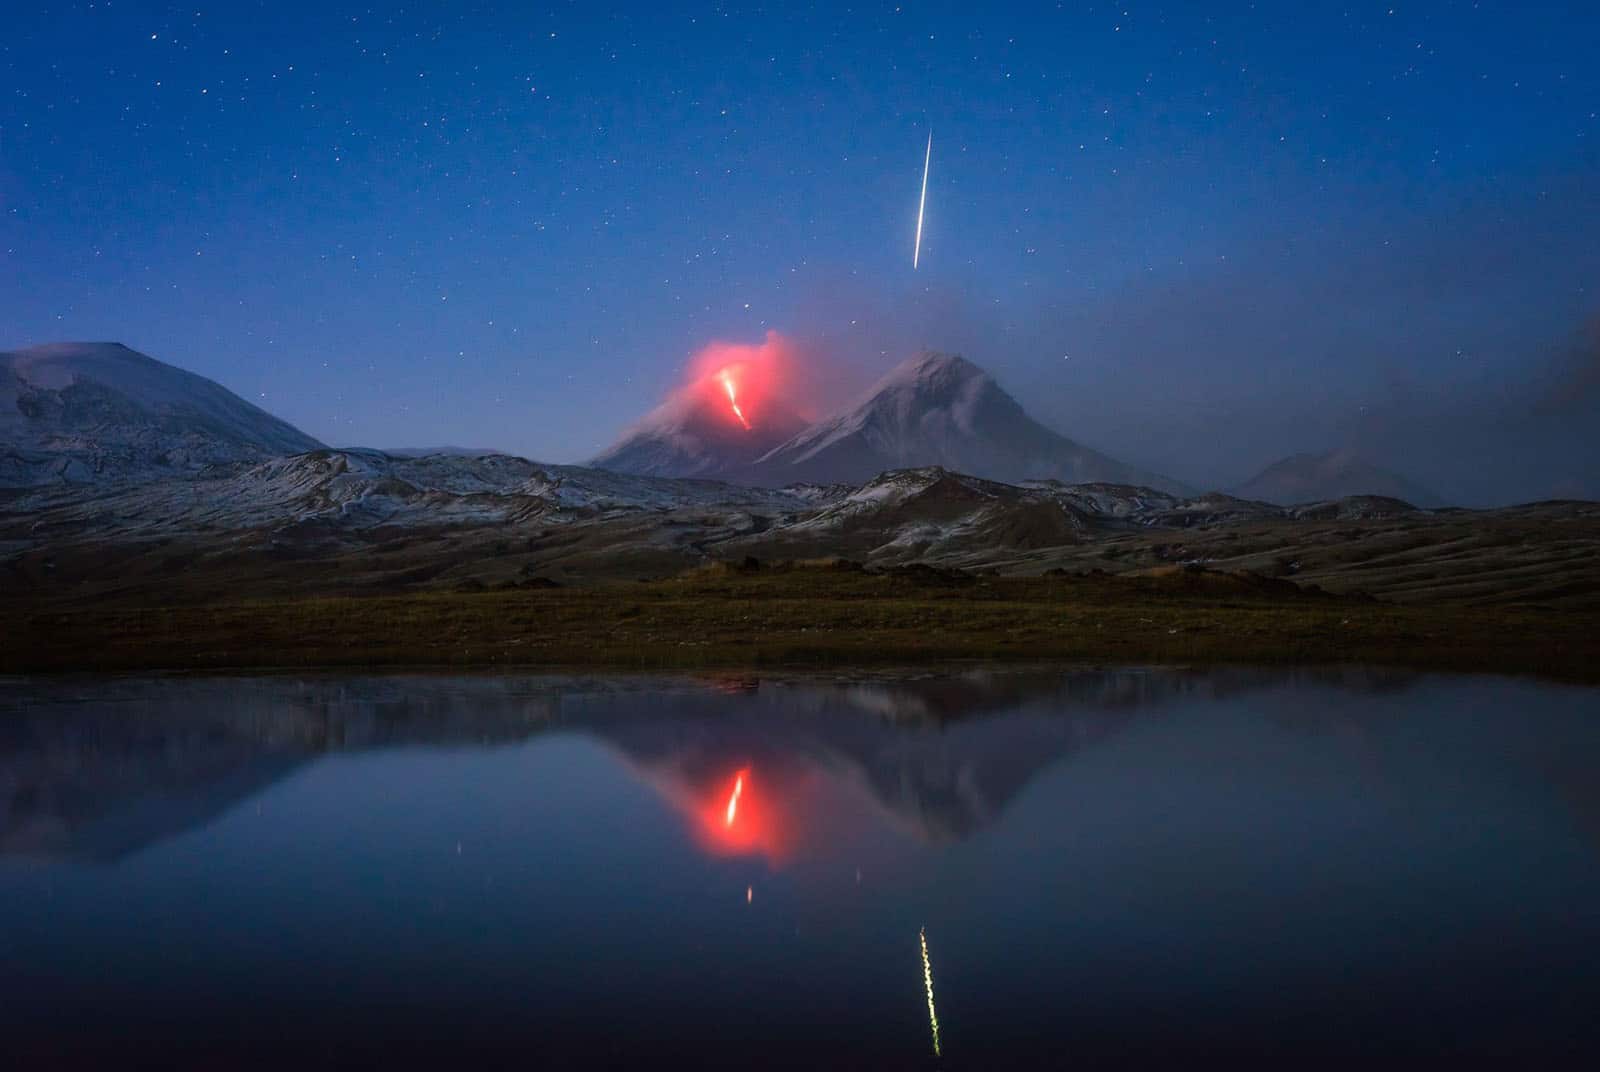 Khoảnh khắc hiếm có: Bắt gặp sao băng bay qua khi đang chụp núi lửa